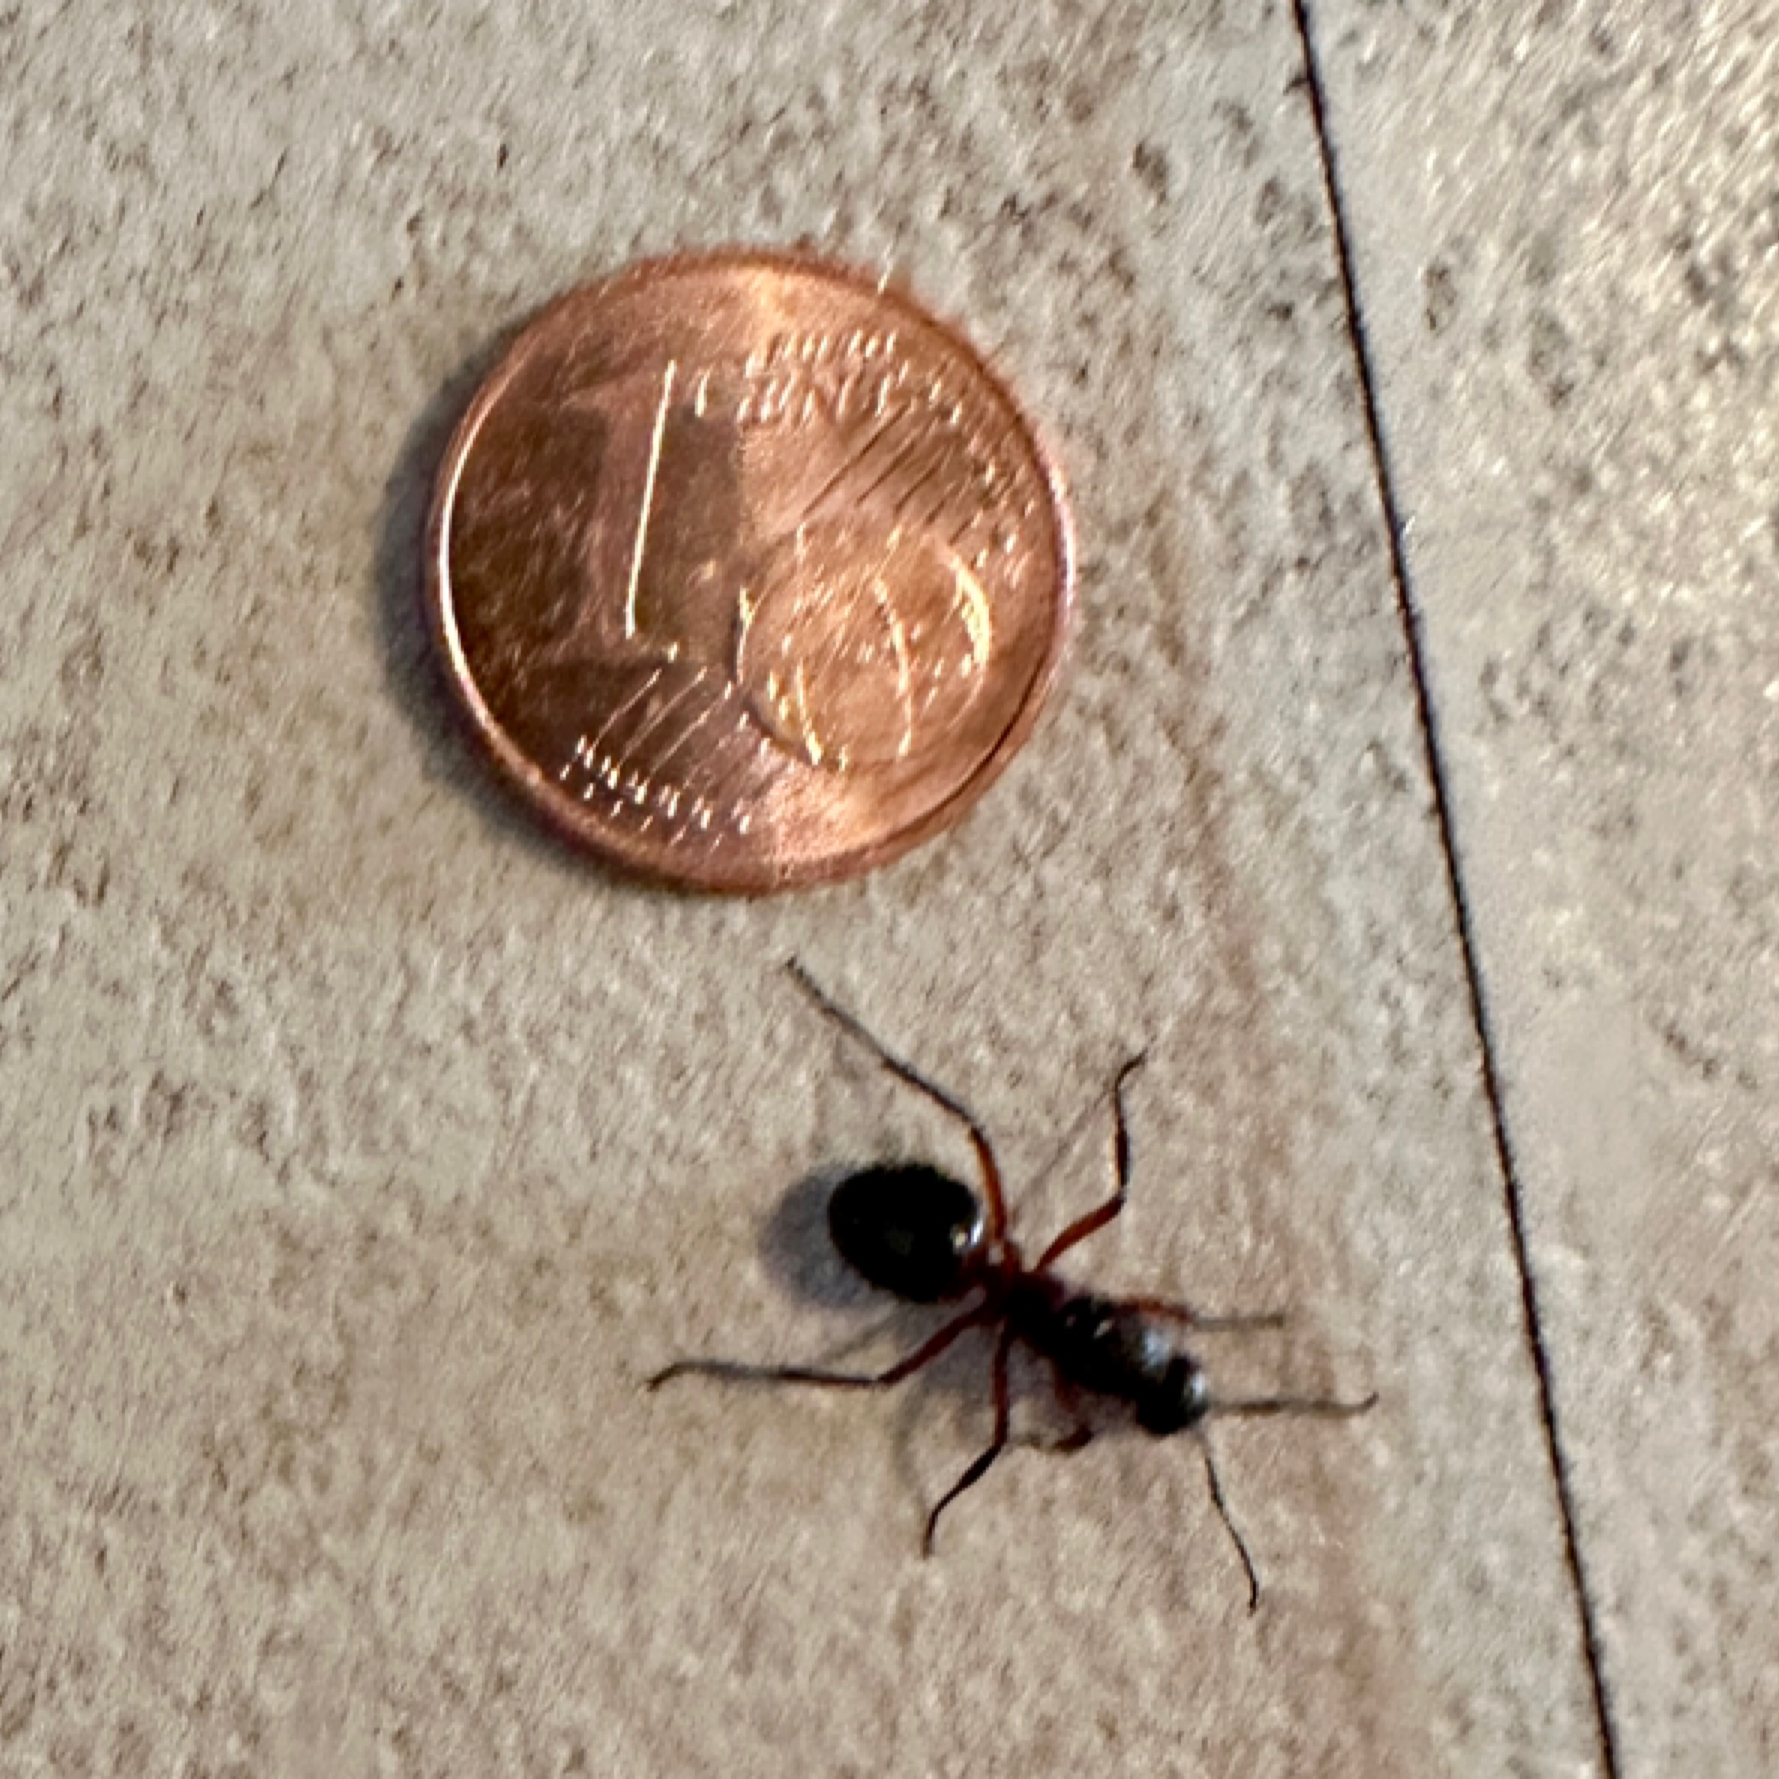 Größenvergleich Ameisenkönigin